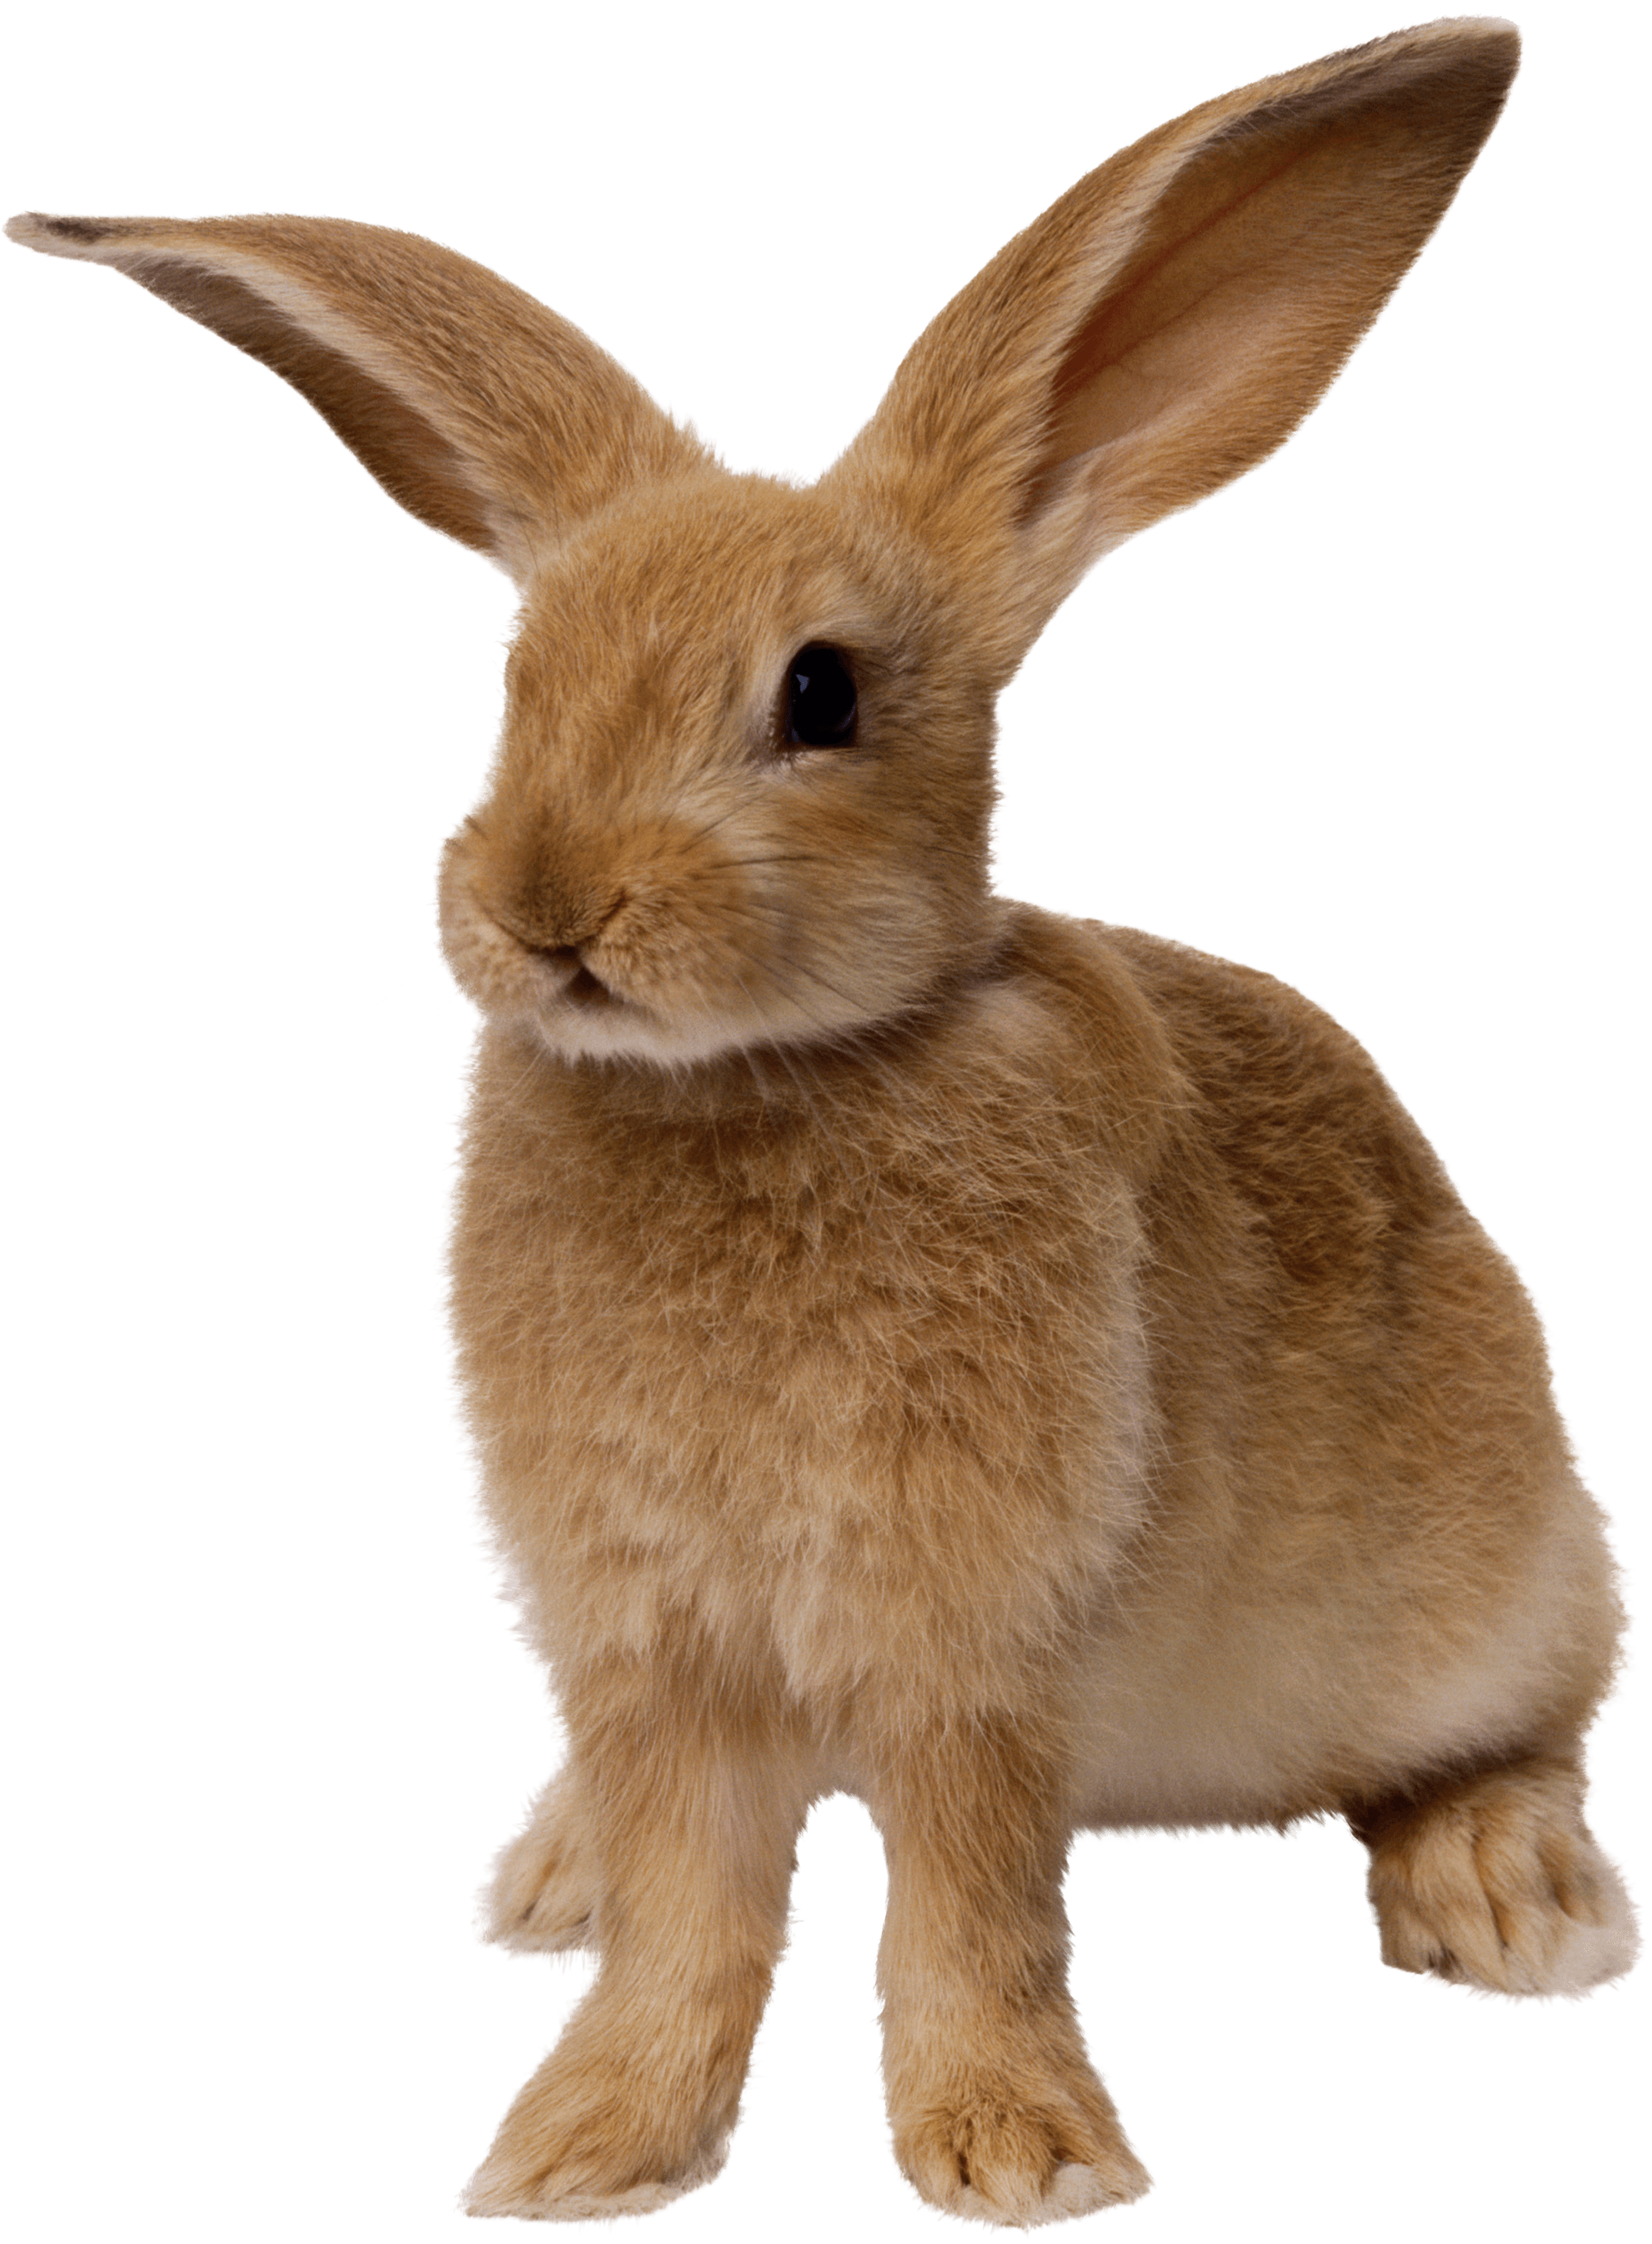 大耳朵兔子PNG图片